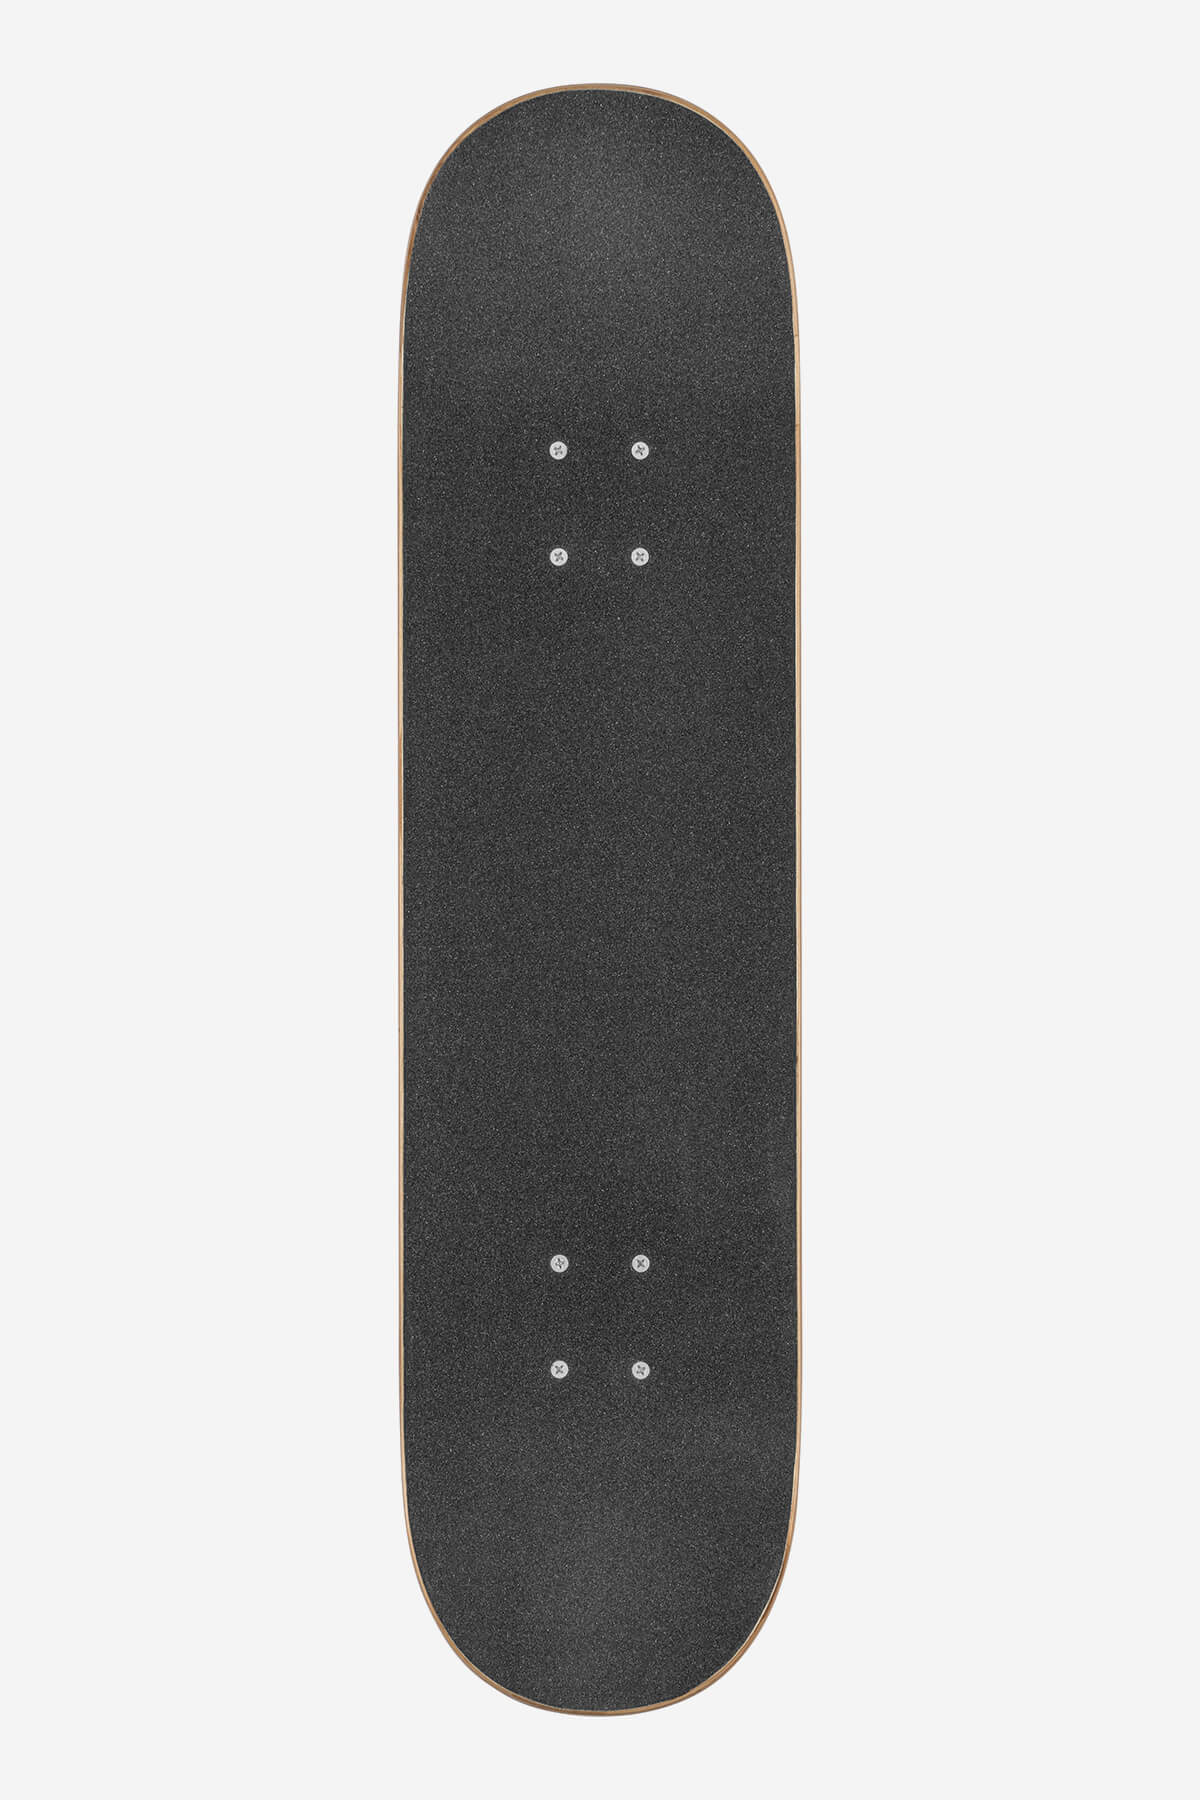 Globe - G0 Fubar - White/Noir - 8.0" complet Skateboard